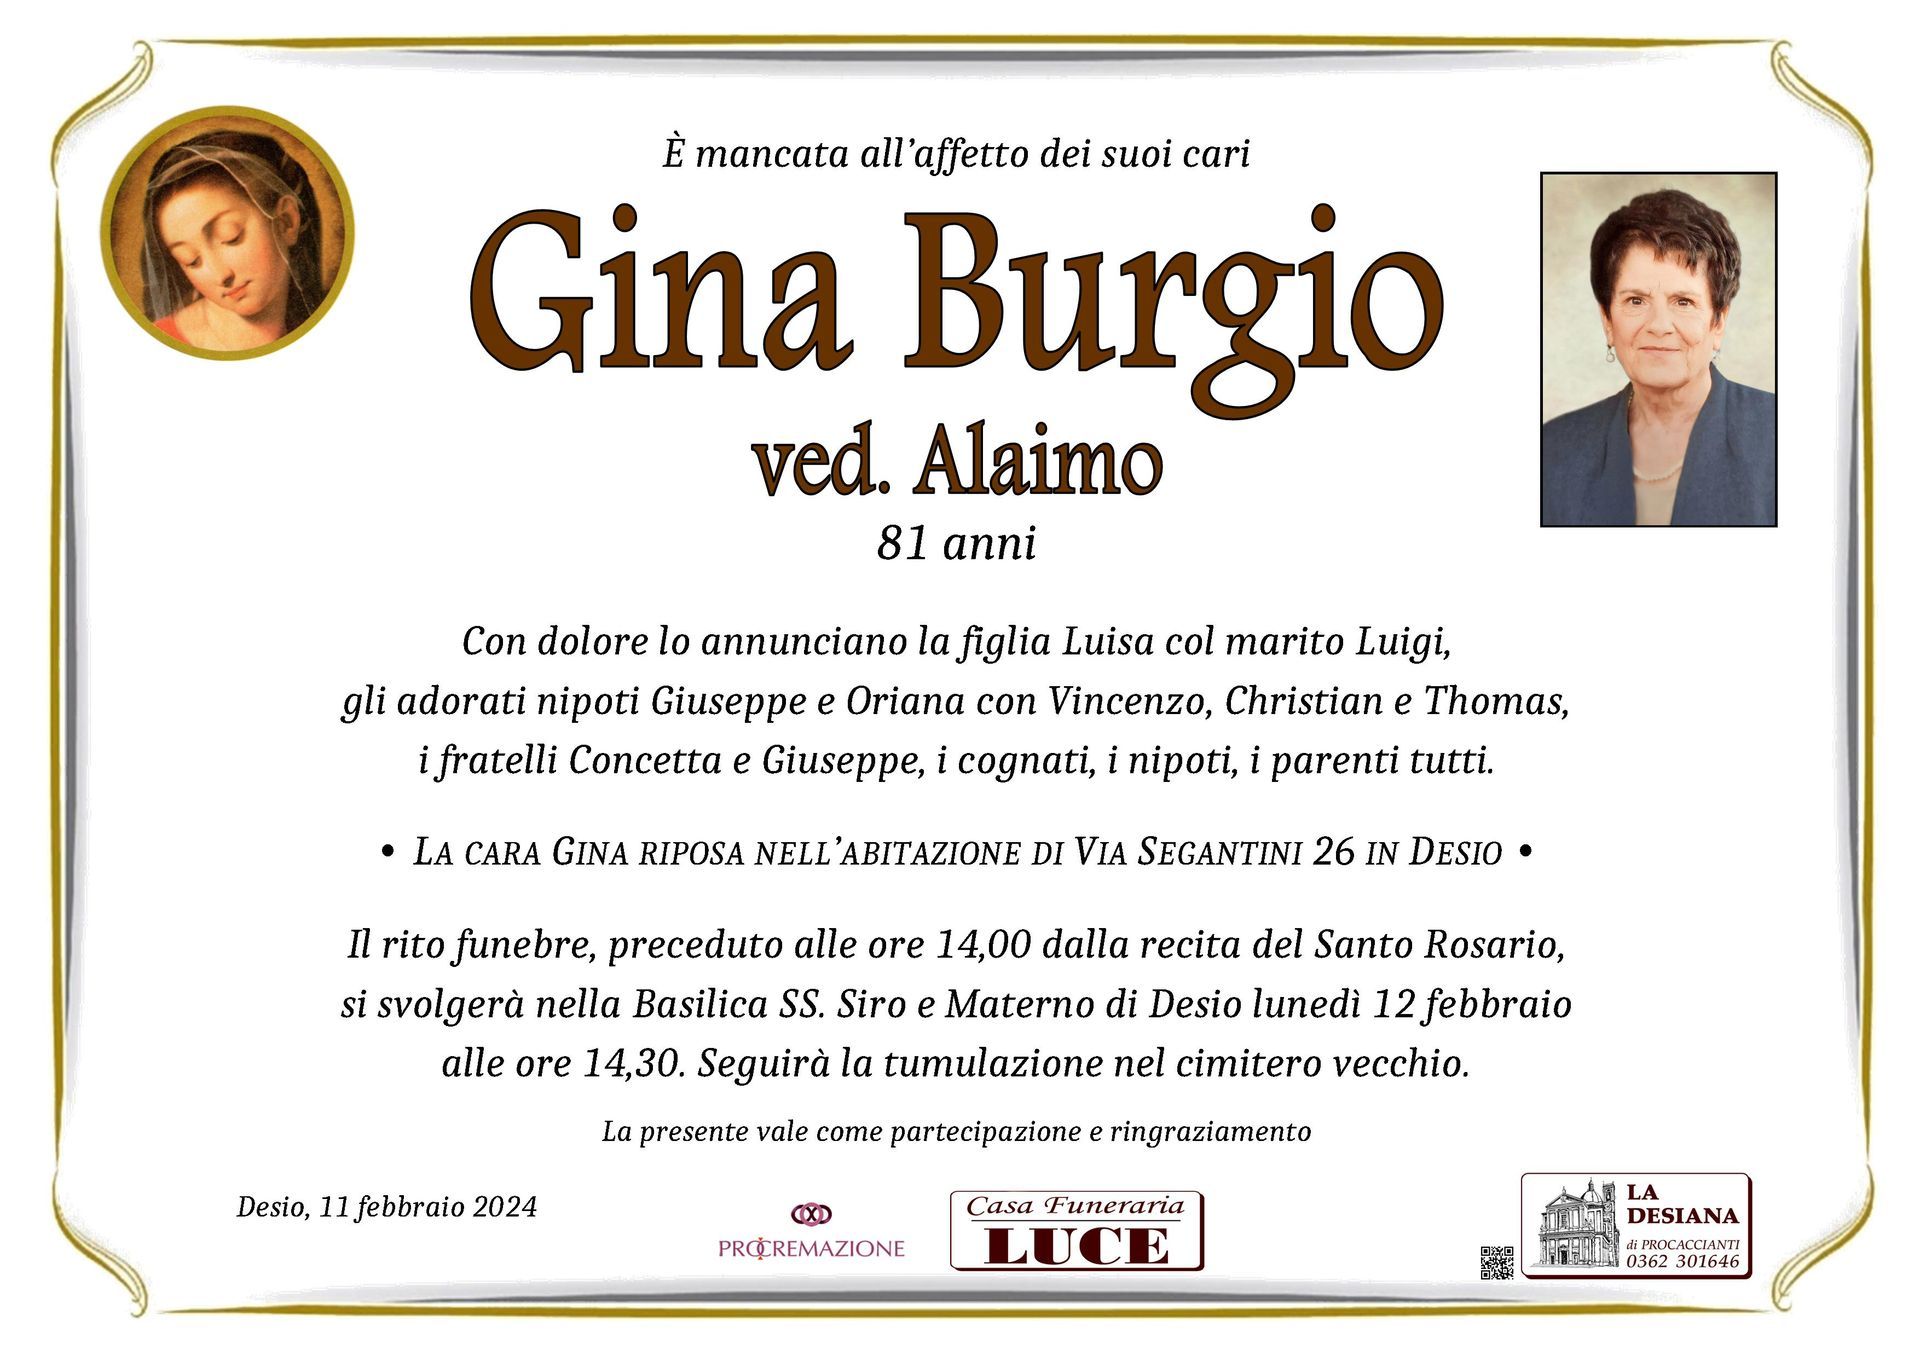 Gina Burgio ved. Alaimo